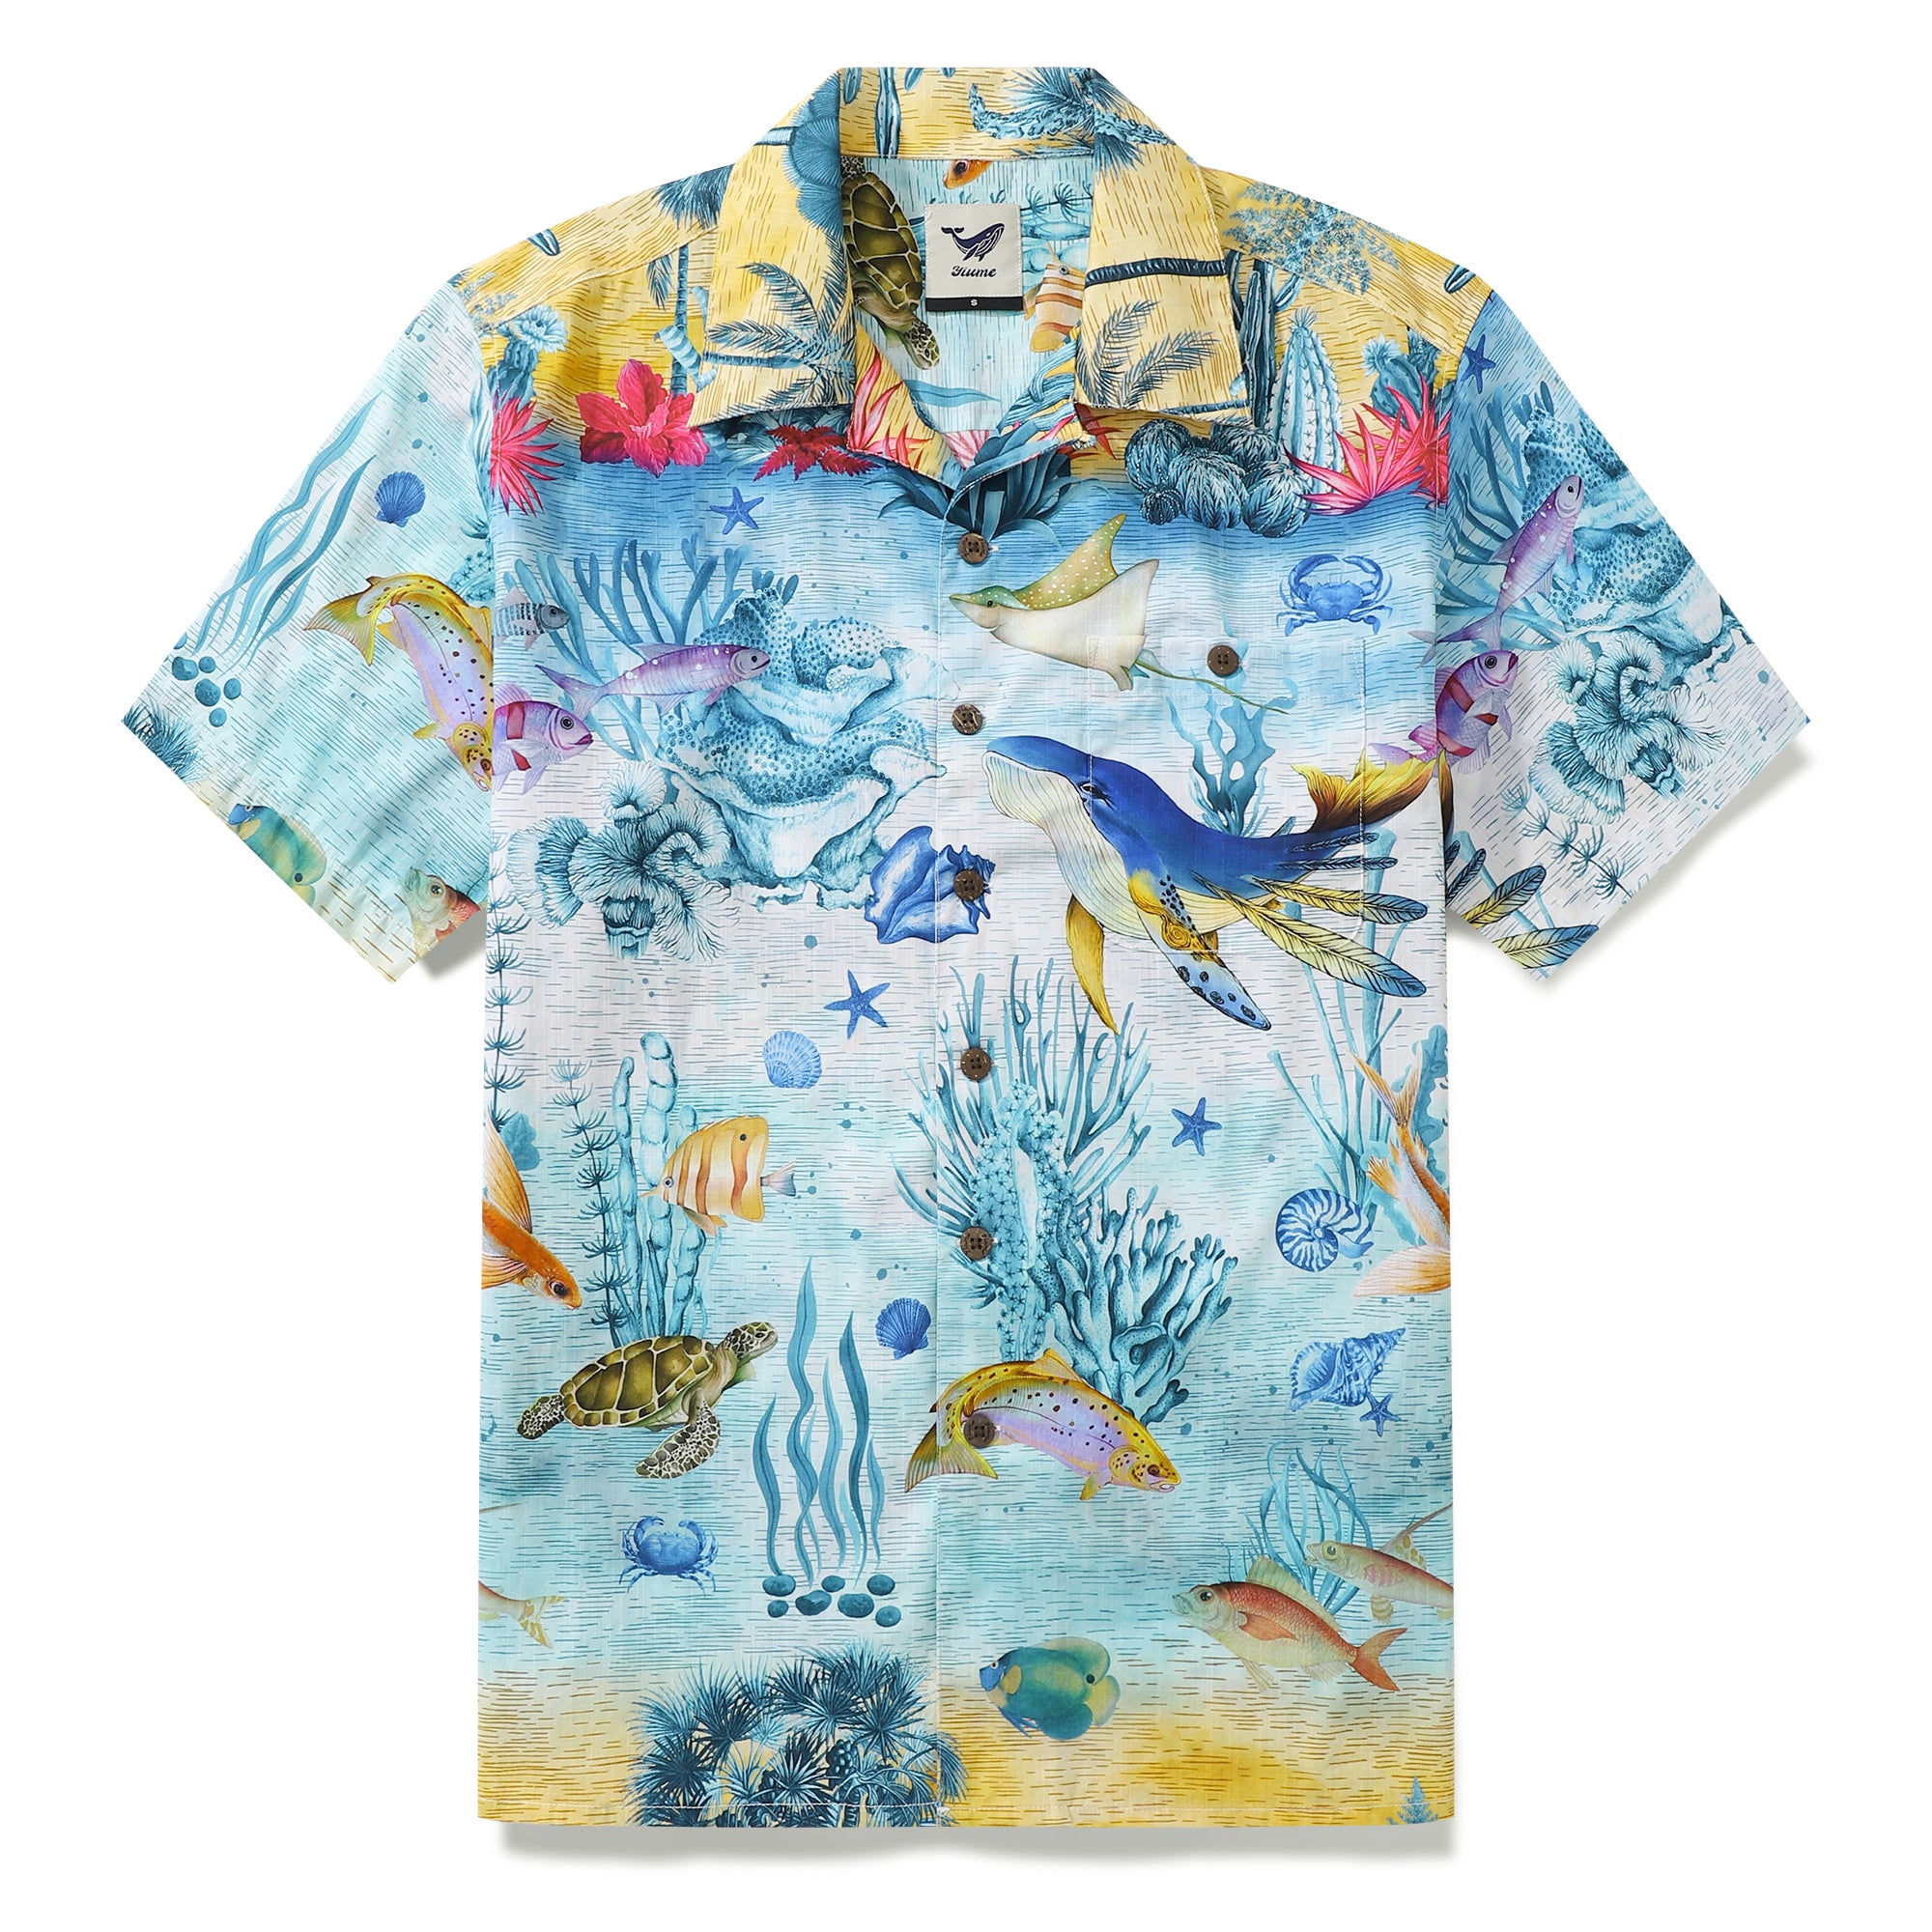 Camisa hawaiana vintage de los años 50 de algodón Funky Camp Shirt Marine Ocean World Botón de coco